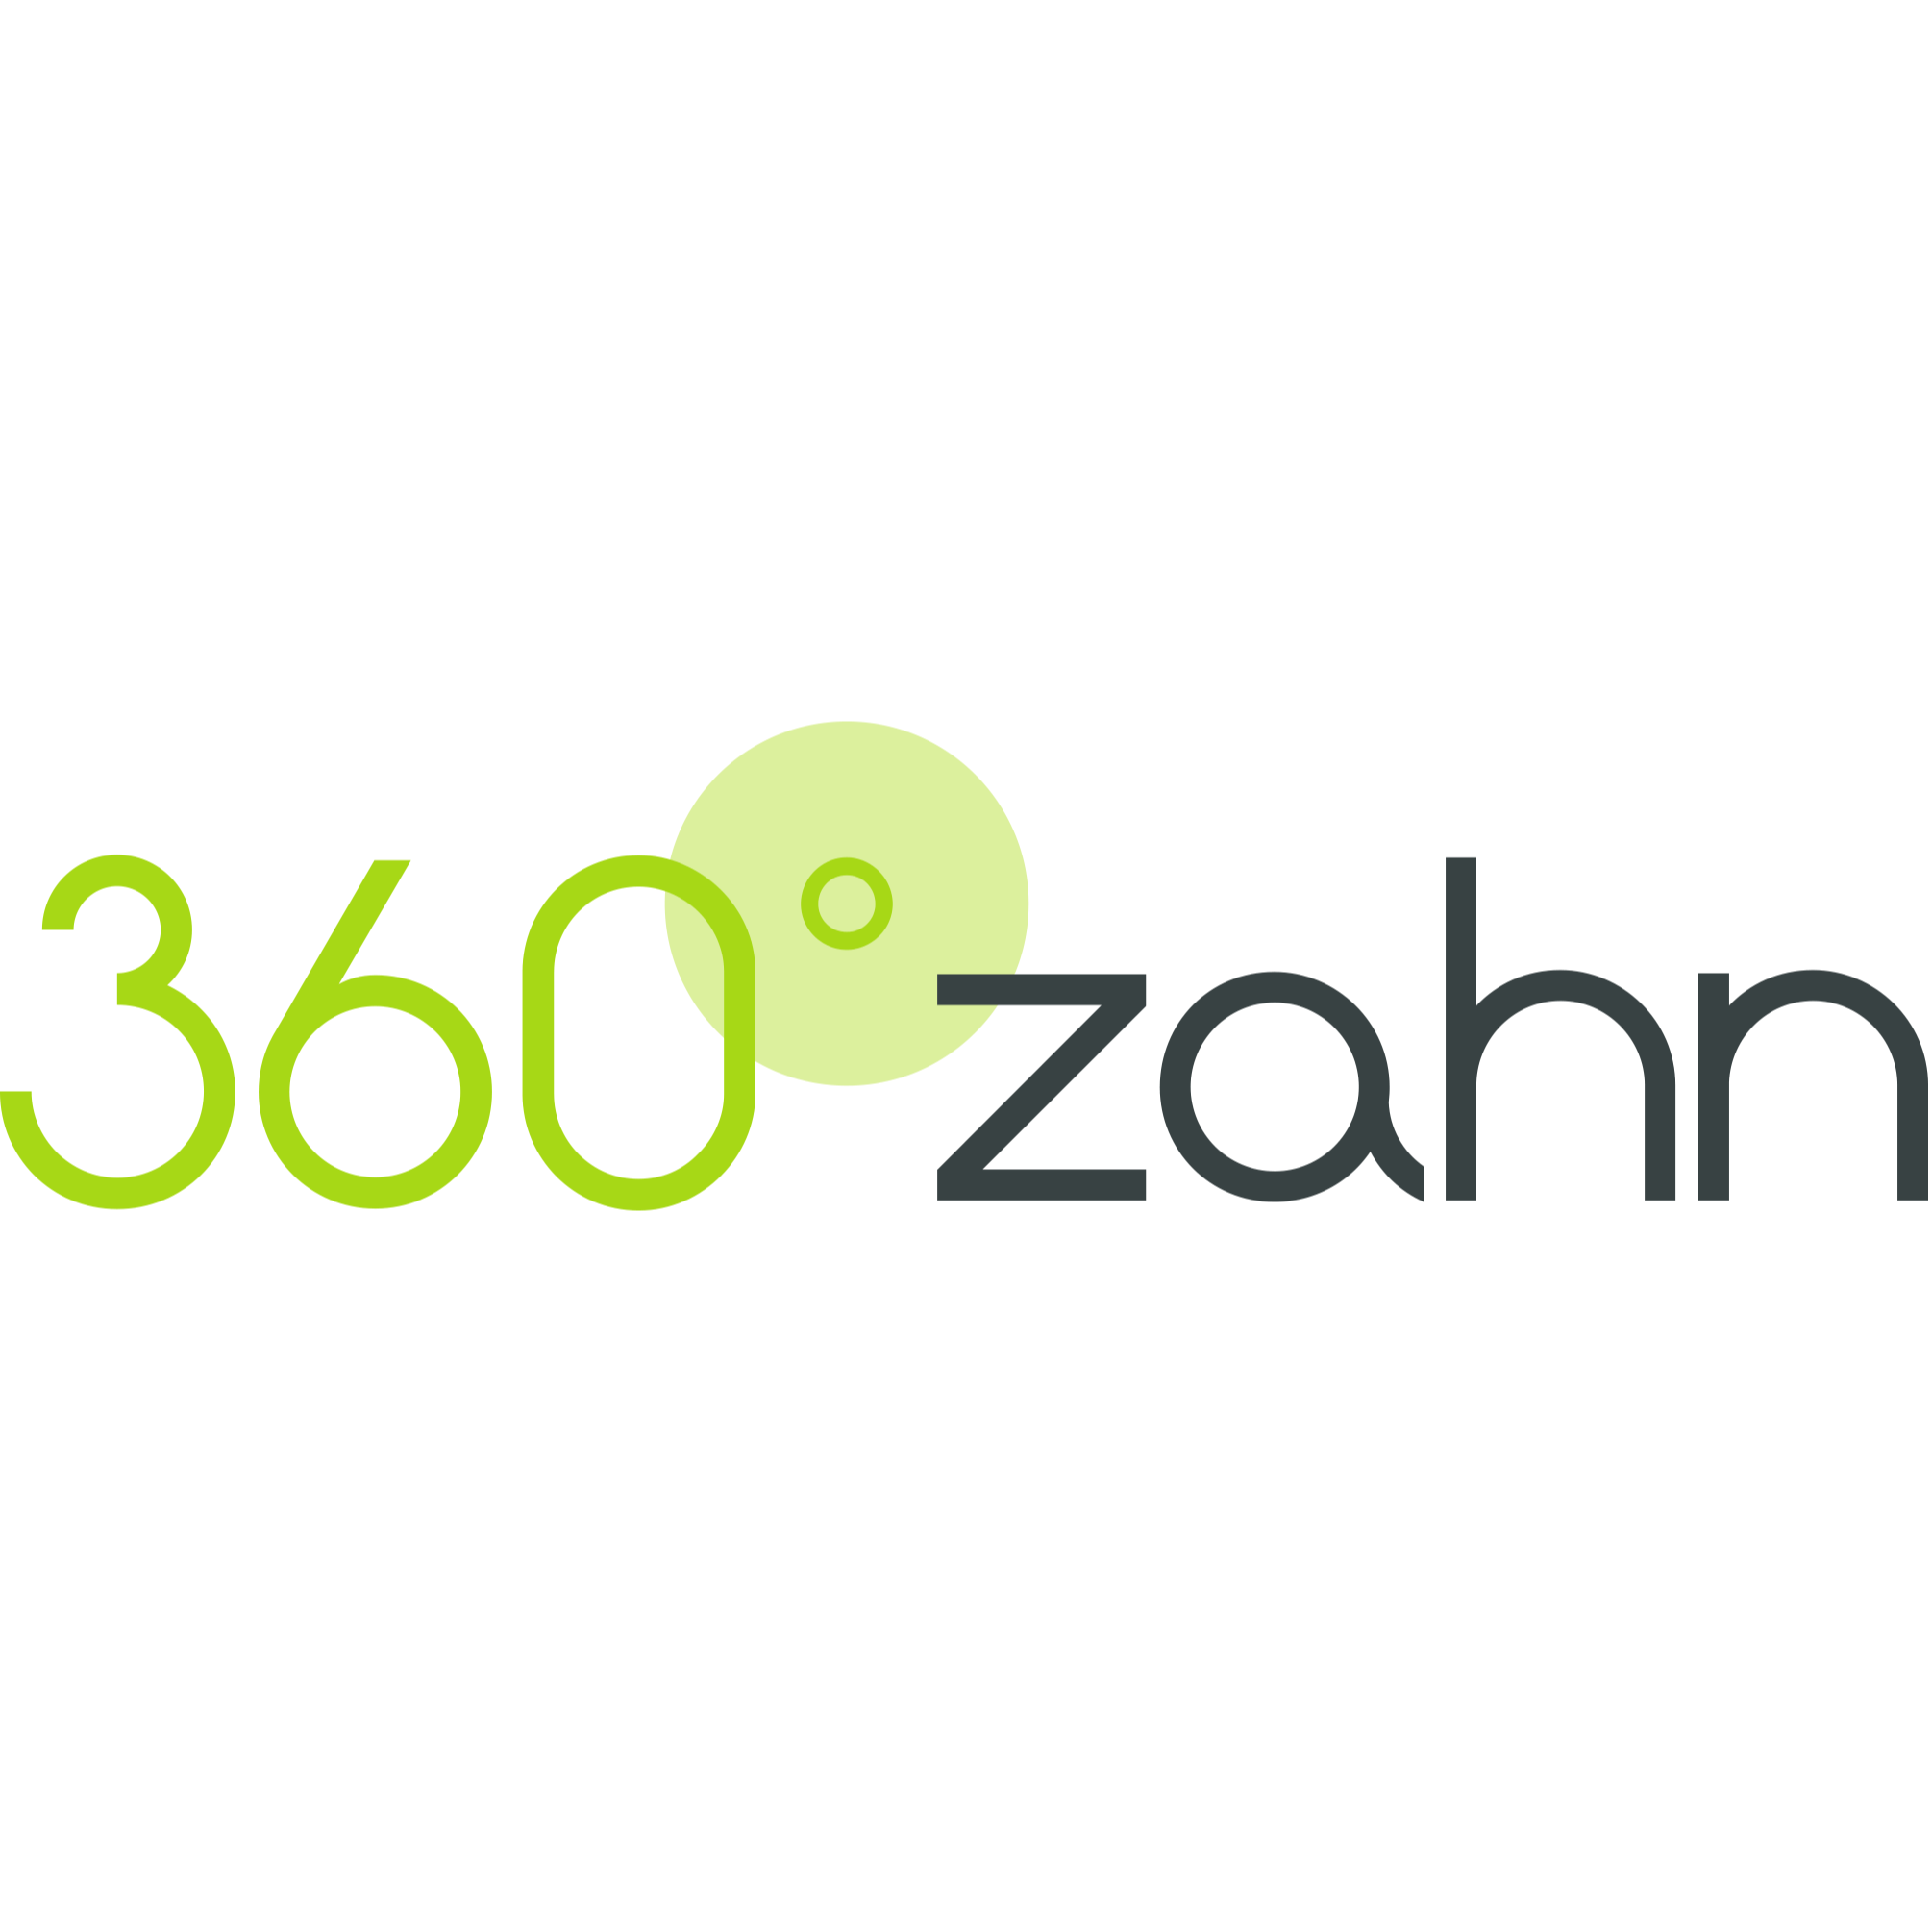 360°zahn - Zahnarzt Düsseldorf in Düsseldorf - Logo